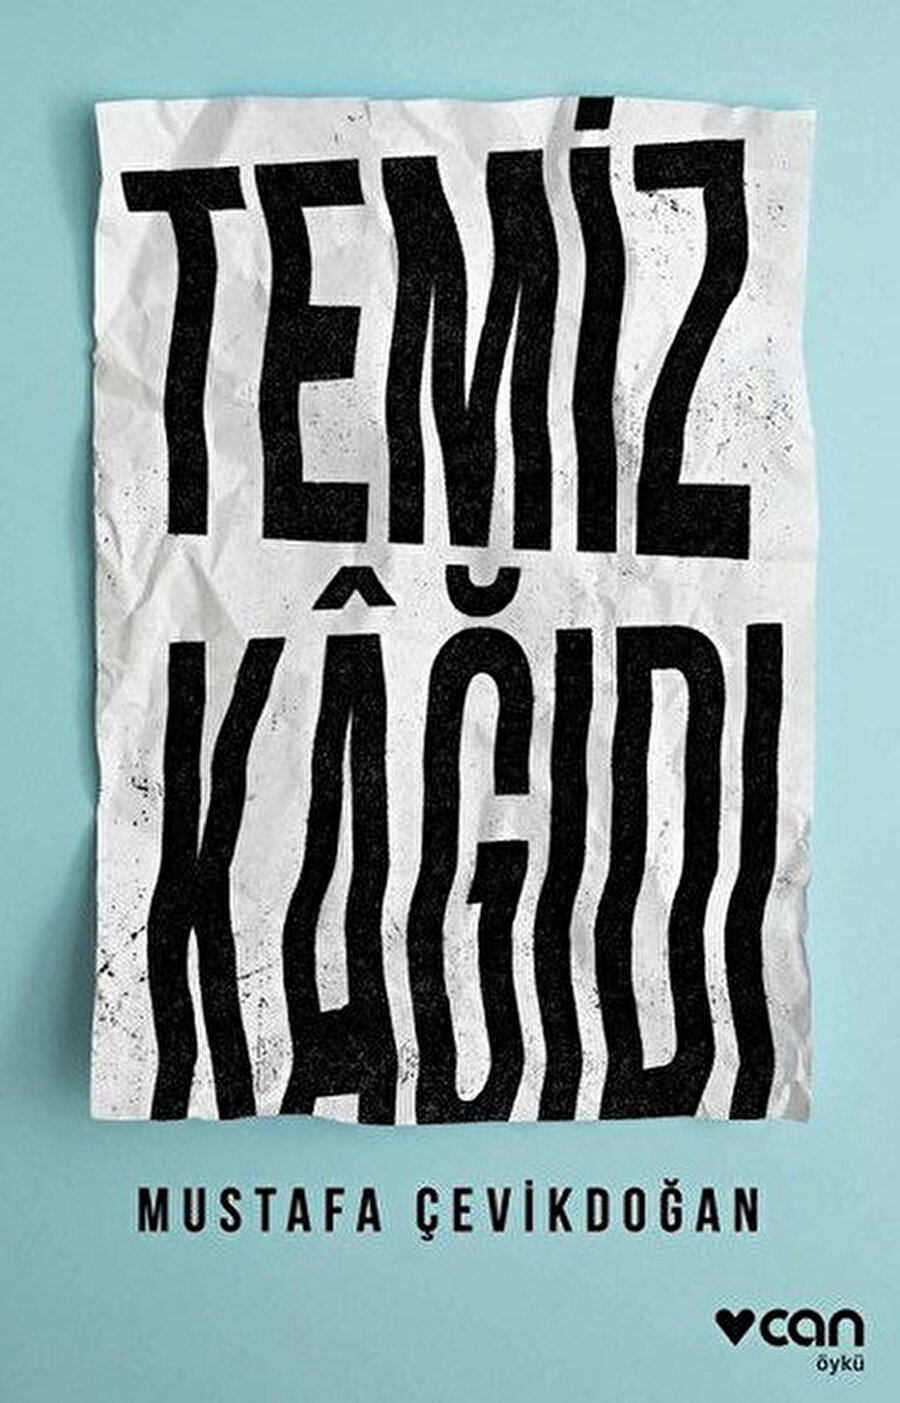 Yetkin bir editör olarak da tanıdığımız Çevikdoğan, eserlerinde temel aktarım aracı olarak dilin duruluğunu tercih ediyor.